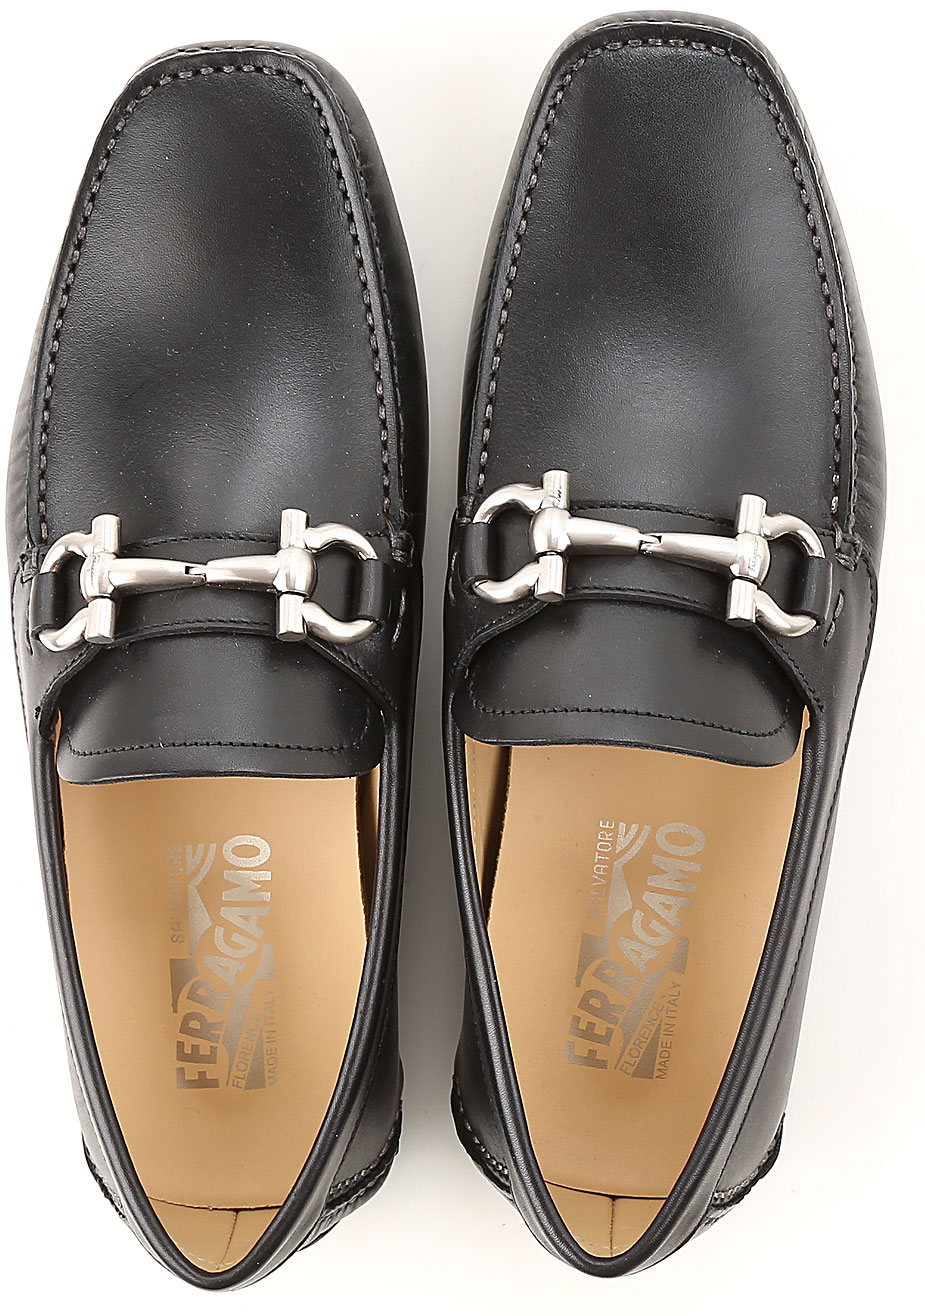 Mens Shoes Salvatore Ferragamo, Style code: 0358405-parigi-nero